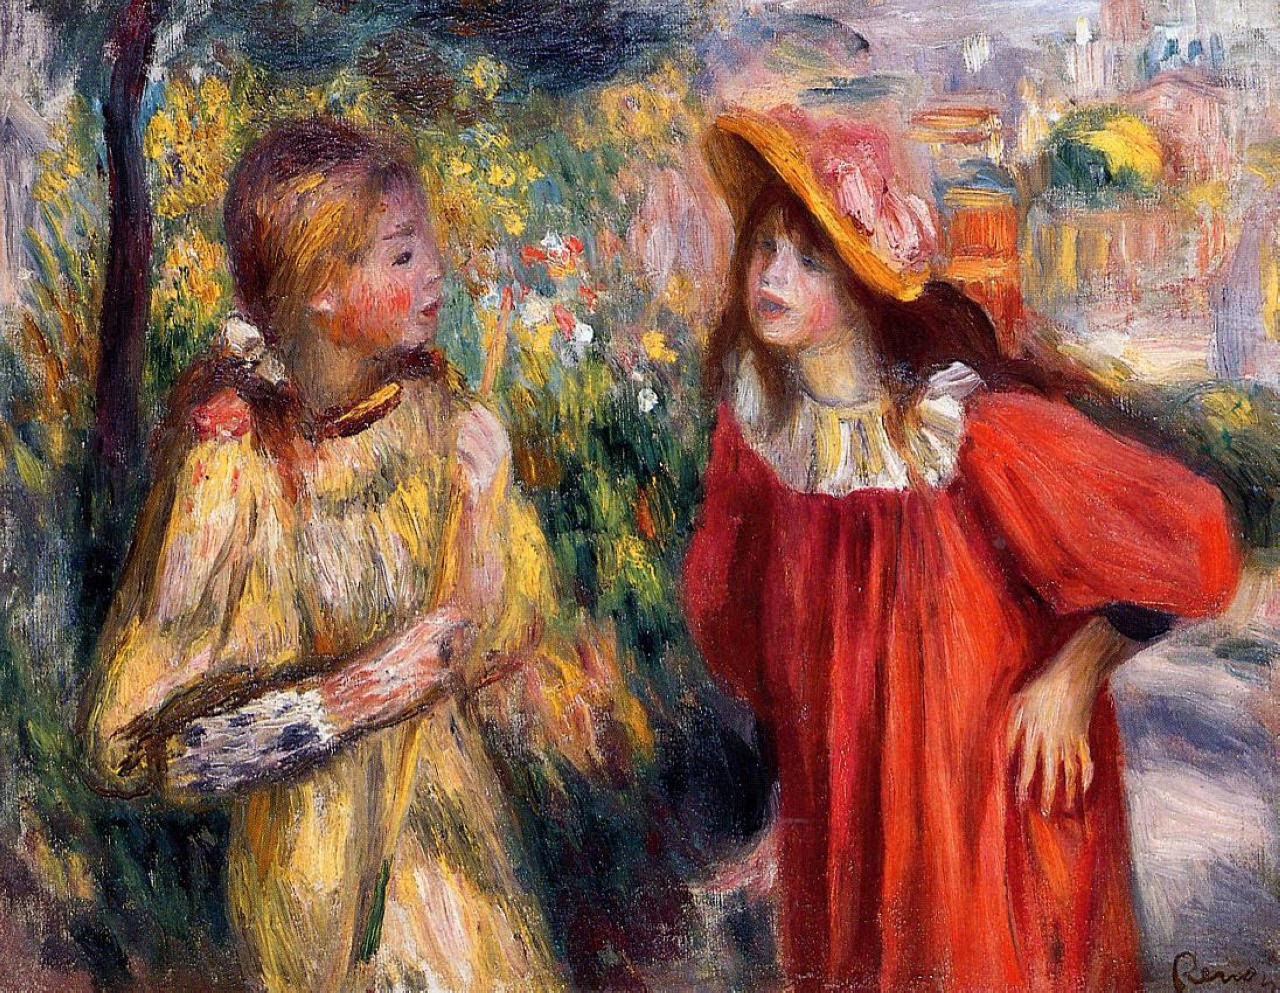 Pierre+Auguste+Renoir-1841-1-19 (216).jpg